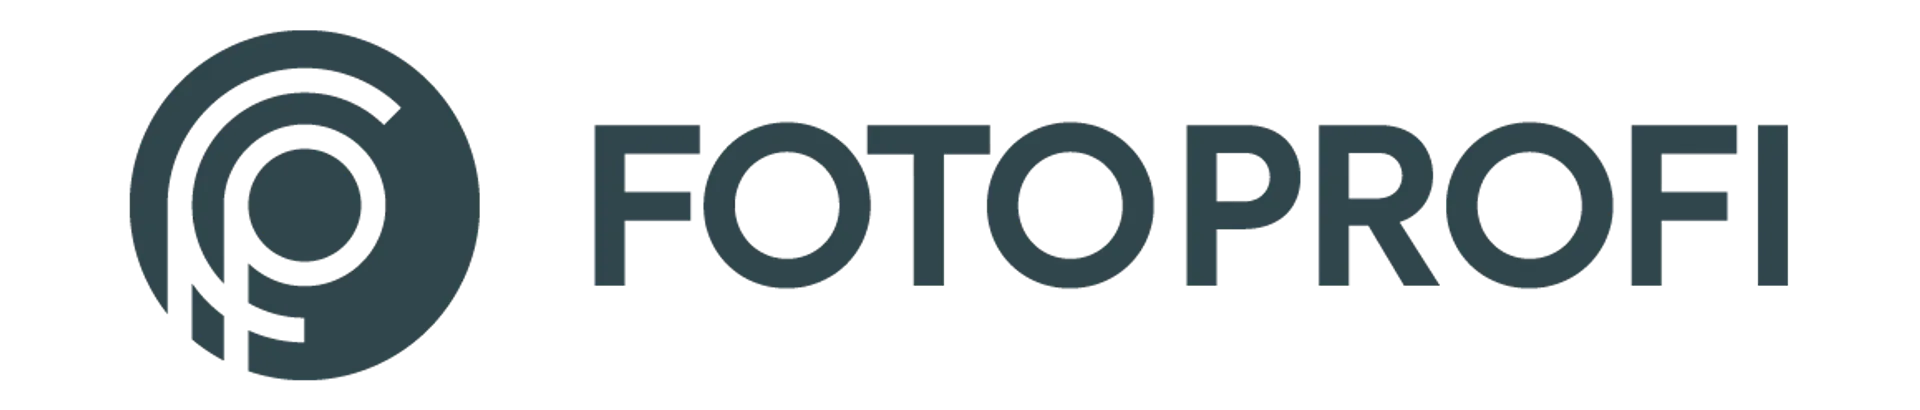 FOTOPROFI logo